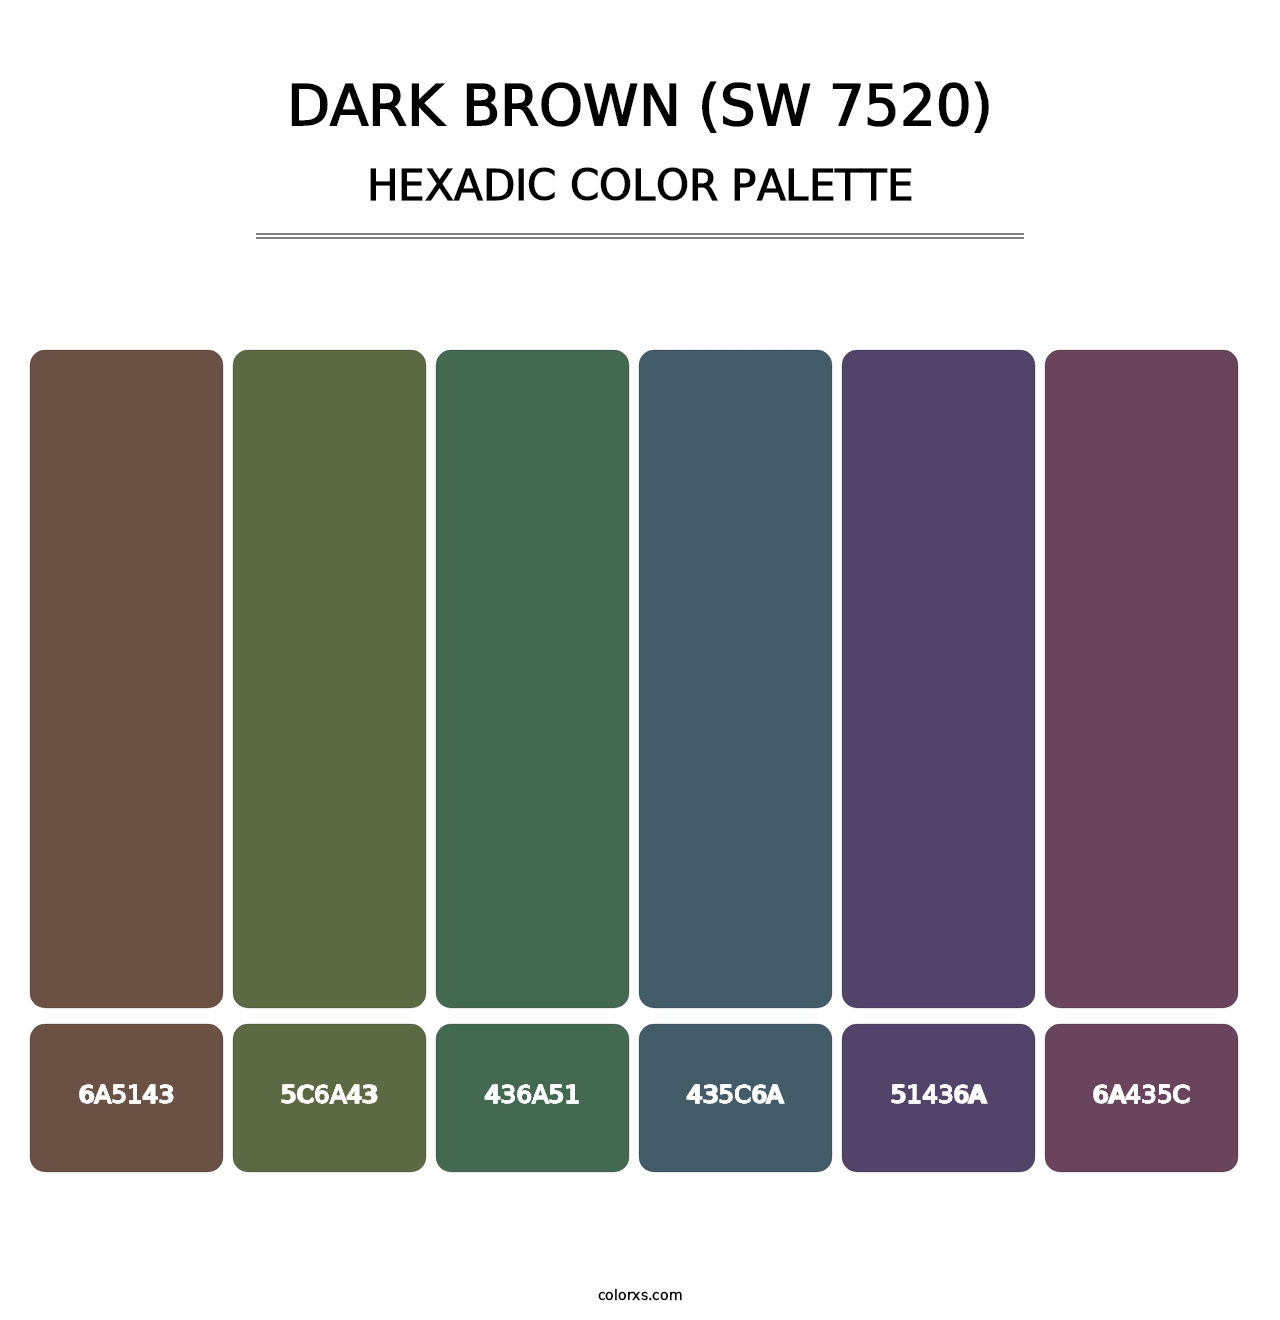 Dark Brown (SW 7520) - Hexadic Color Palette